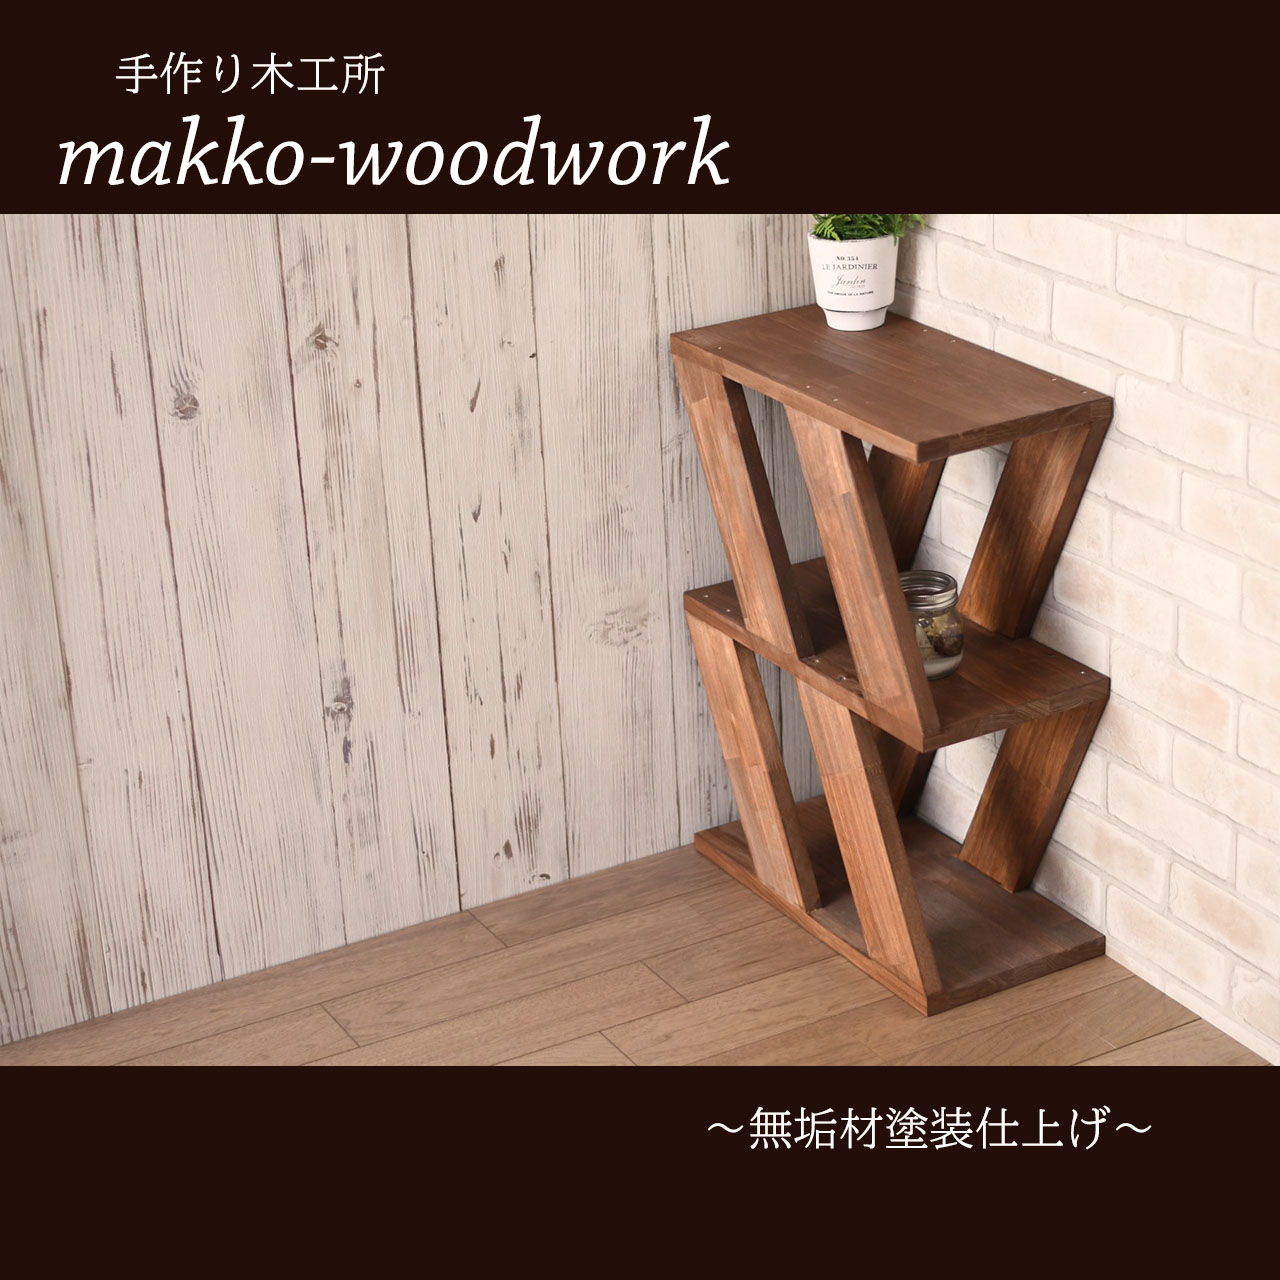 木製スツール サイドテーブル 3段ラック 収納ラック Iichi ハンドメイド クラフト作品 手仕事品の通販